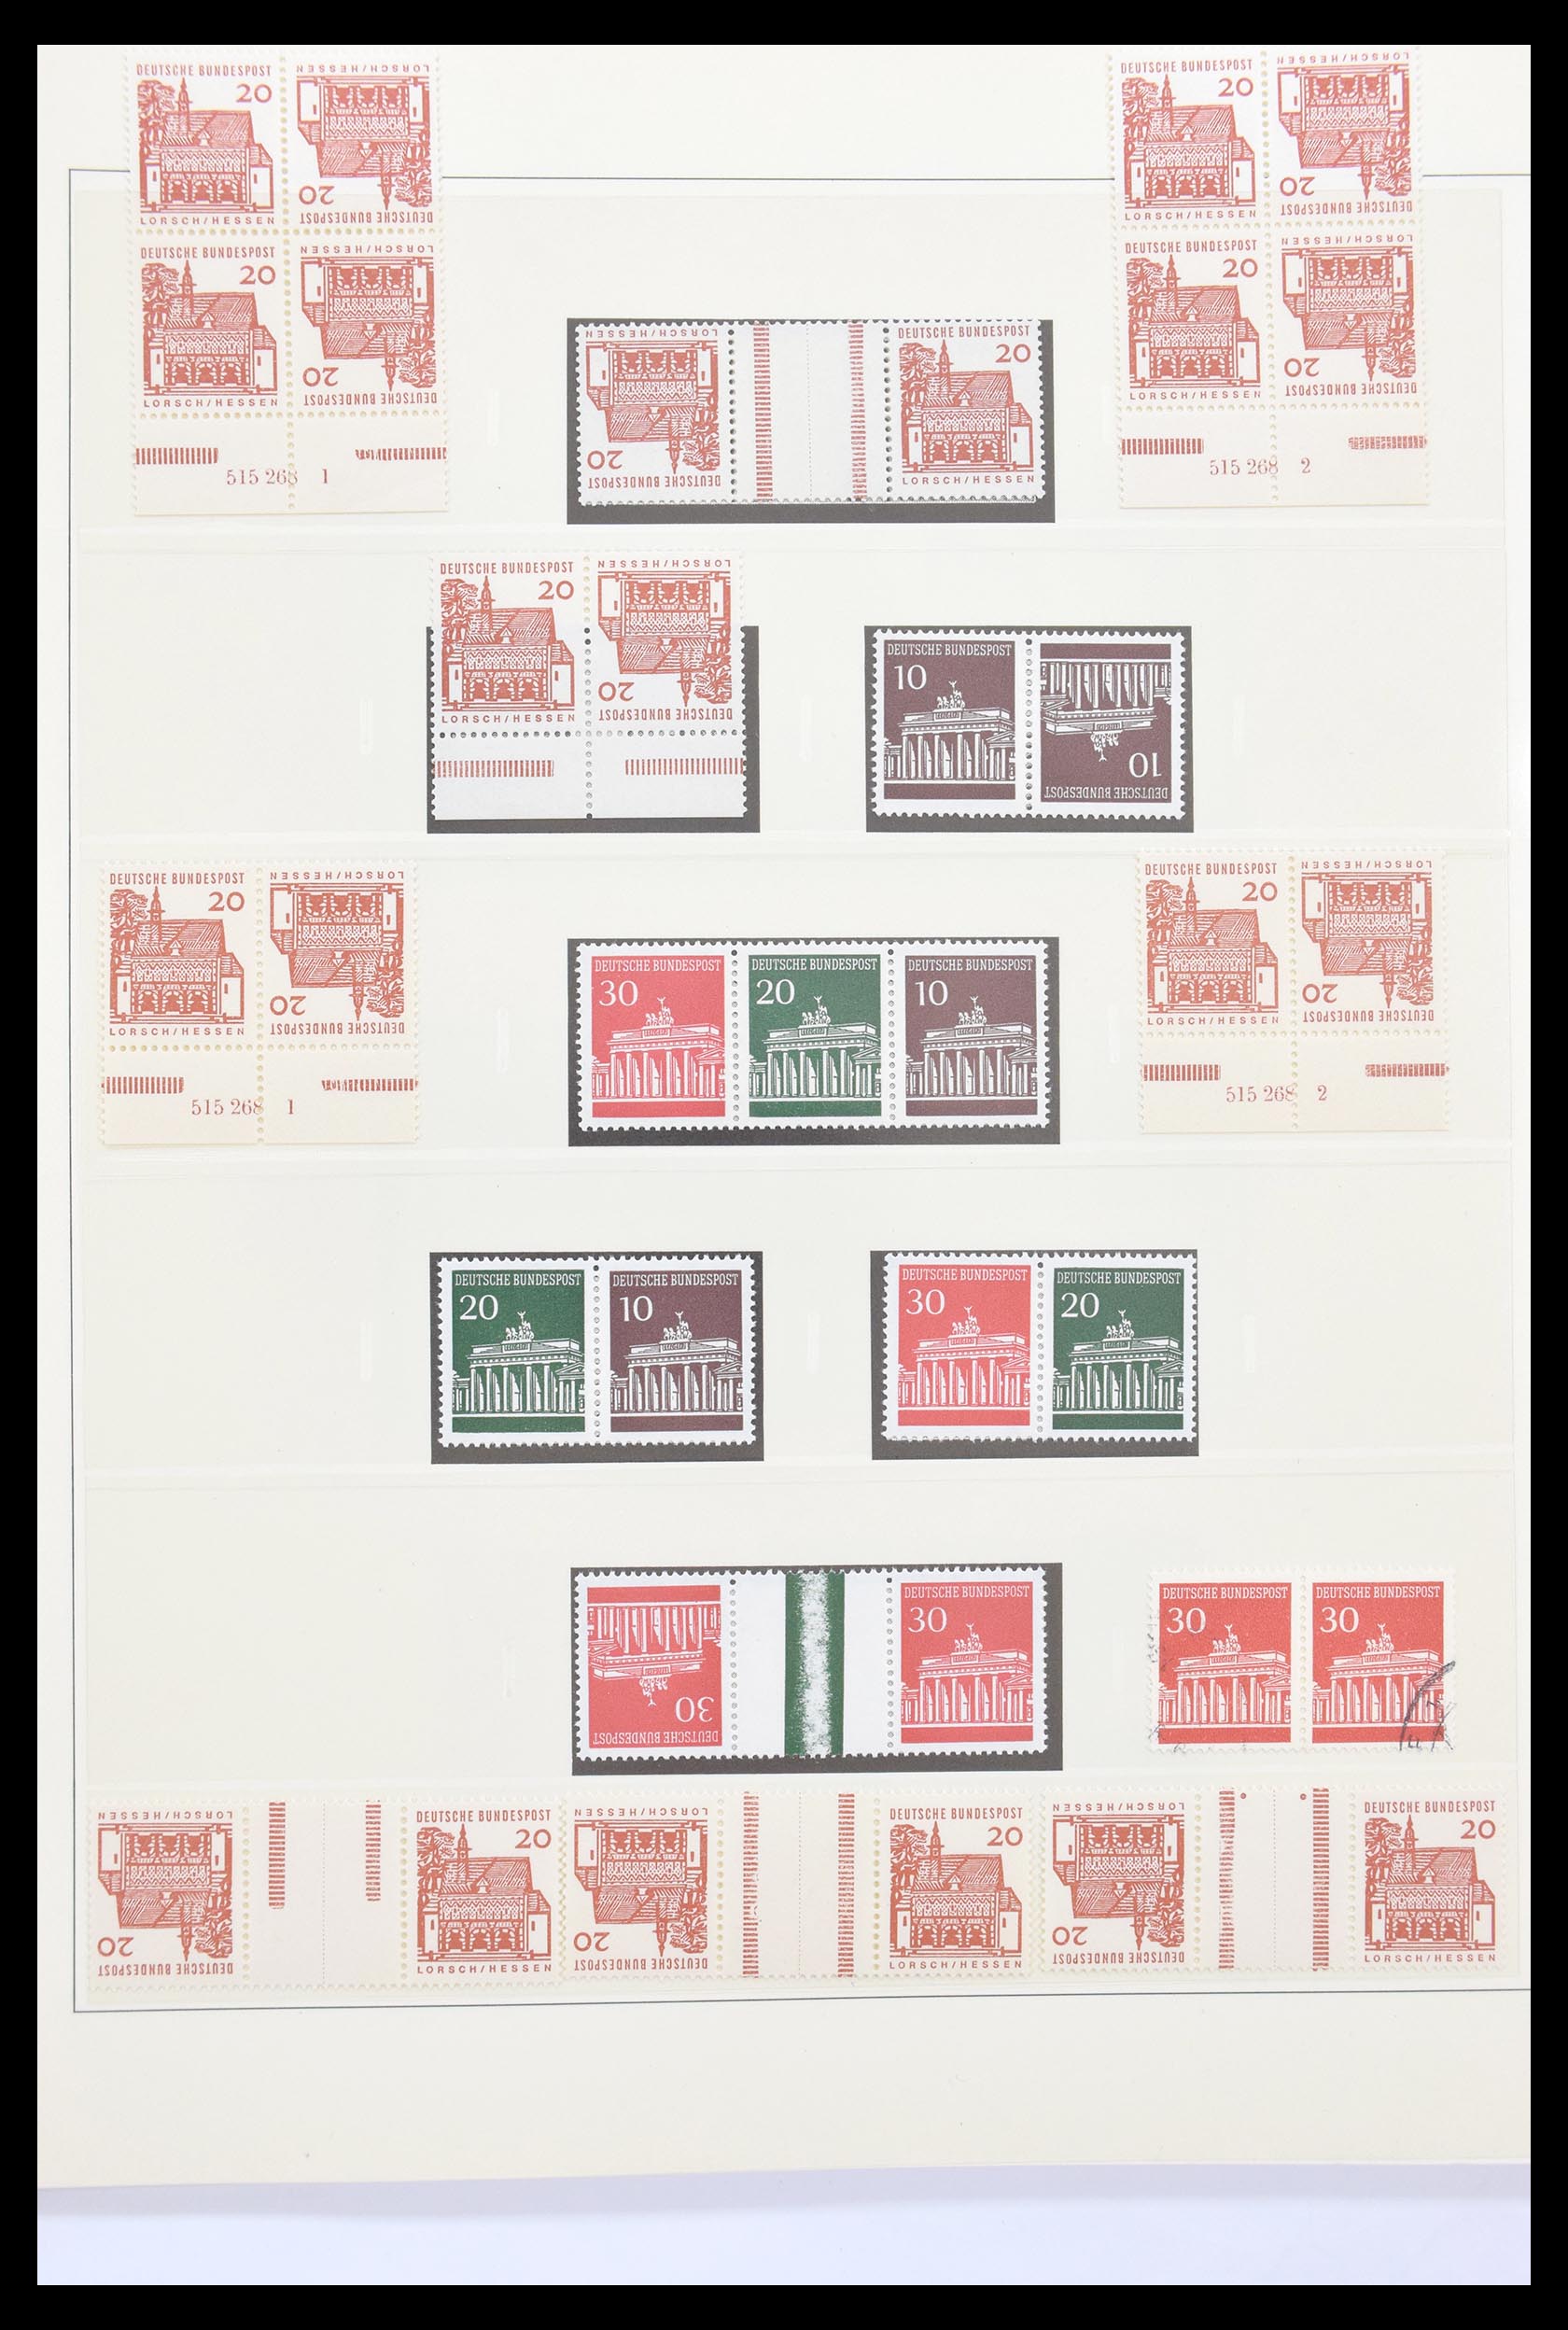 30605 023 - 30605 Bundespost combinaties 1951-1974.